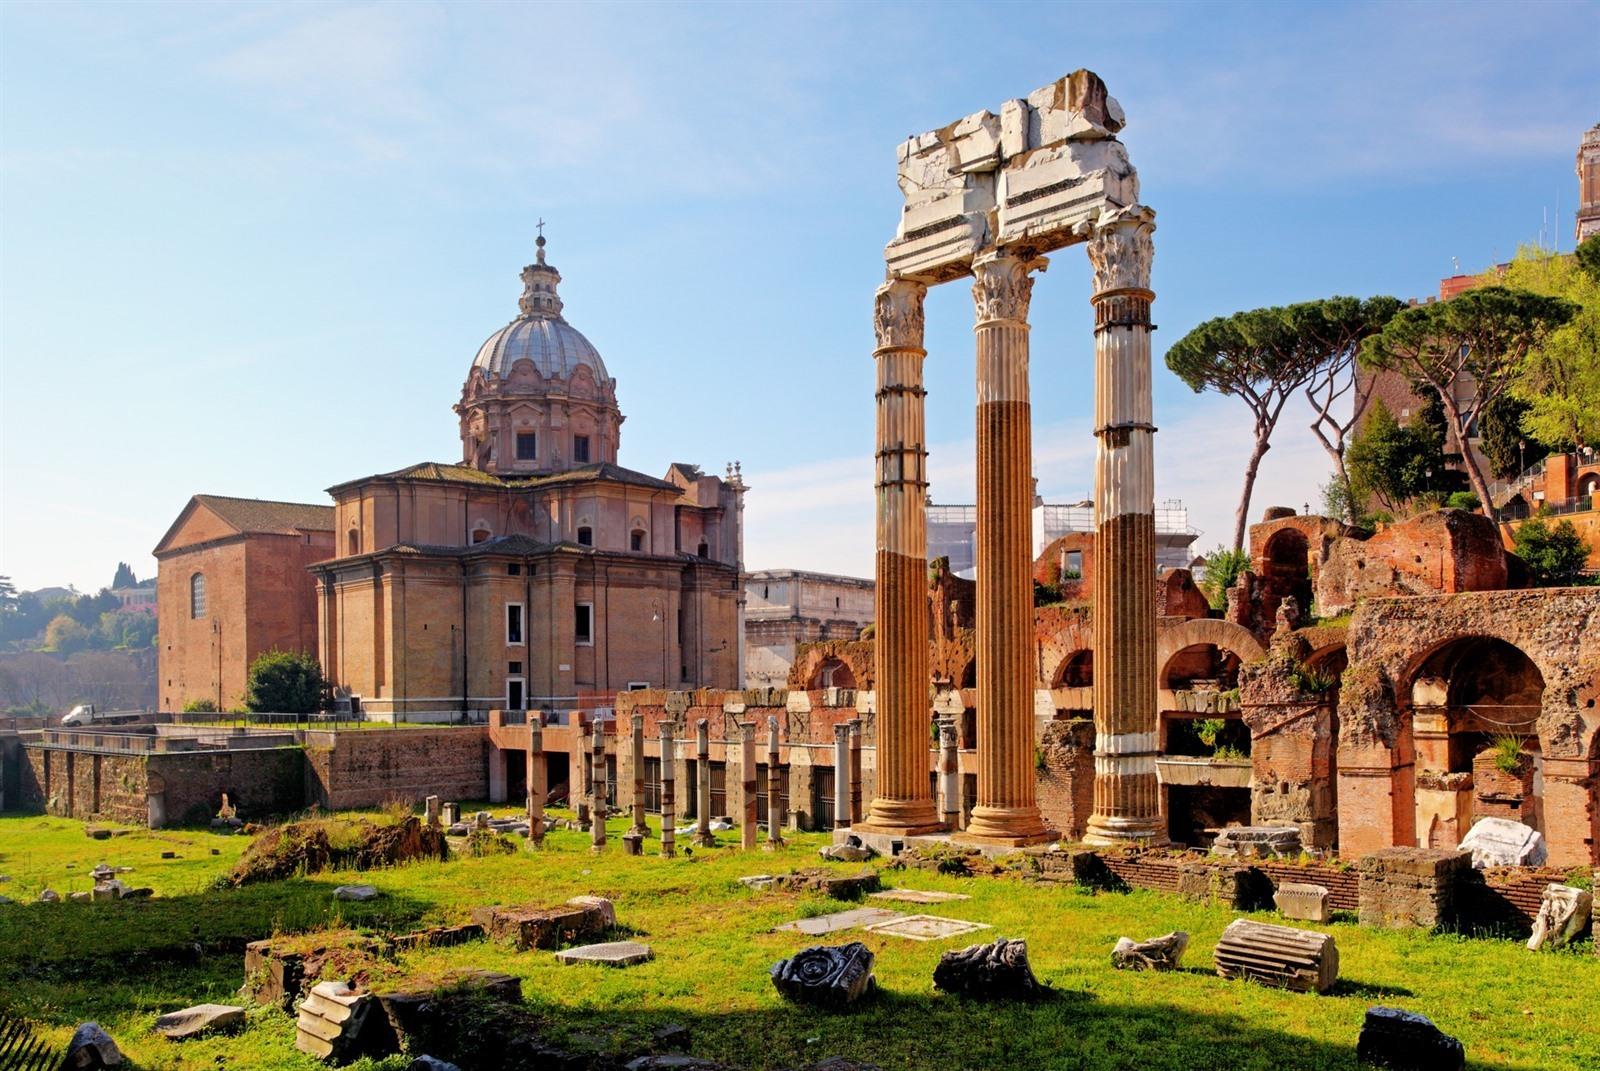 Het Forum Romanum in Rome bezoeken? Info, tips & tickets